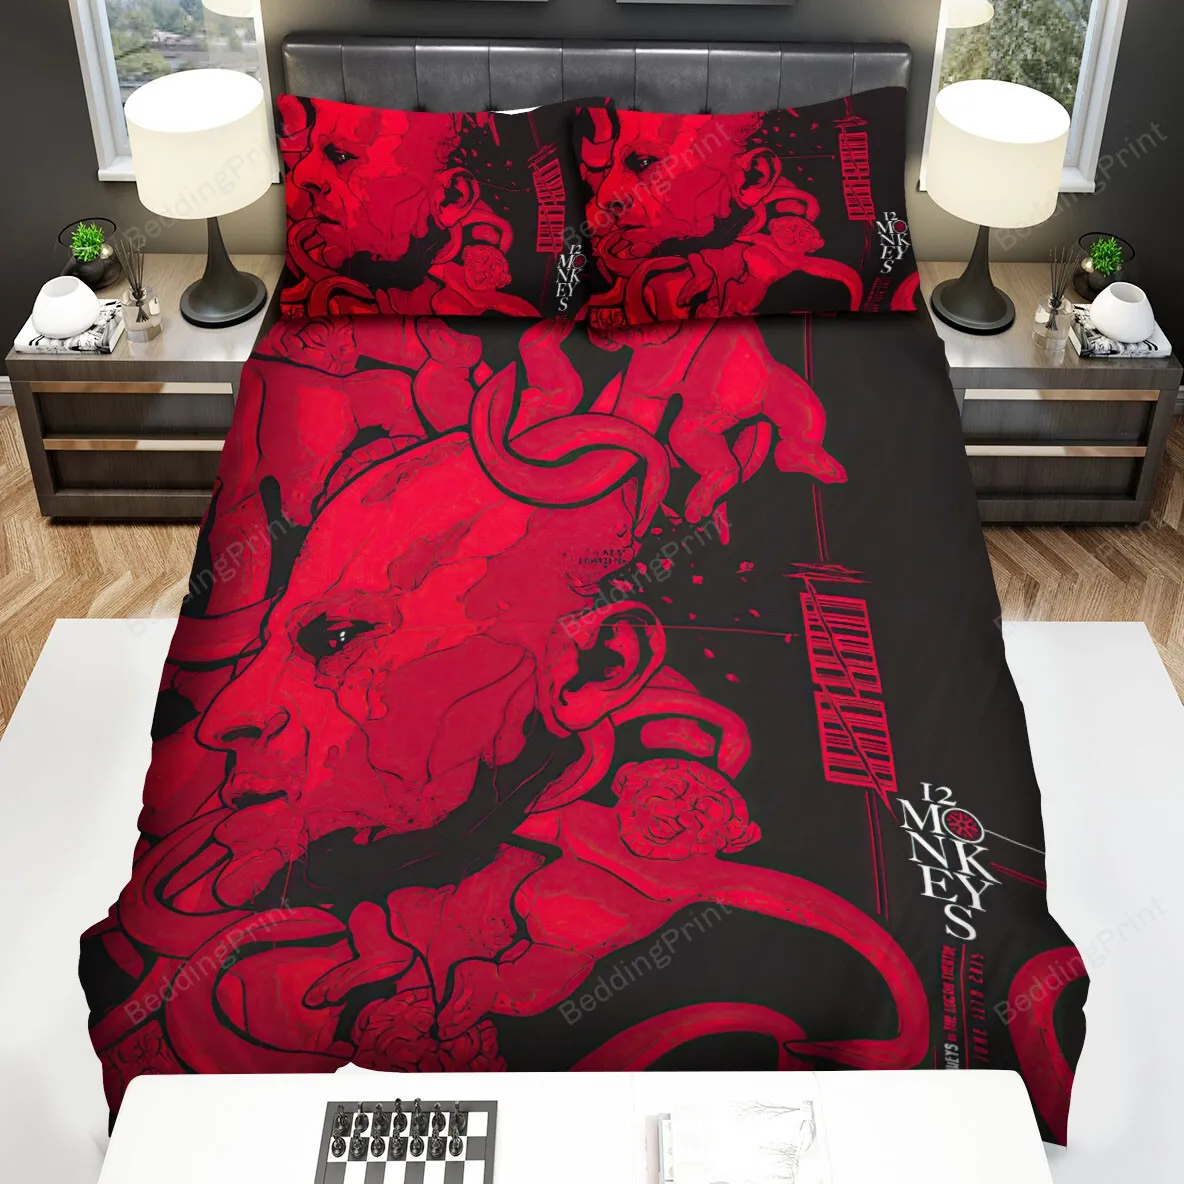 12 Monkeys (20152018) Poster Movie Poster Bed Sheets Spread Comforter Duvet Cover Bedding Sets Ver 5